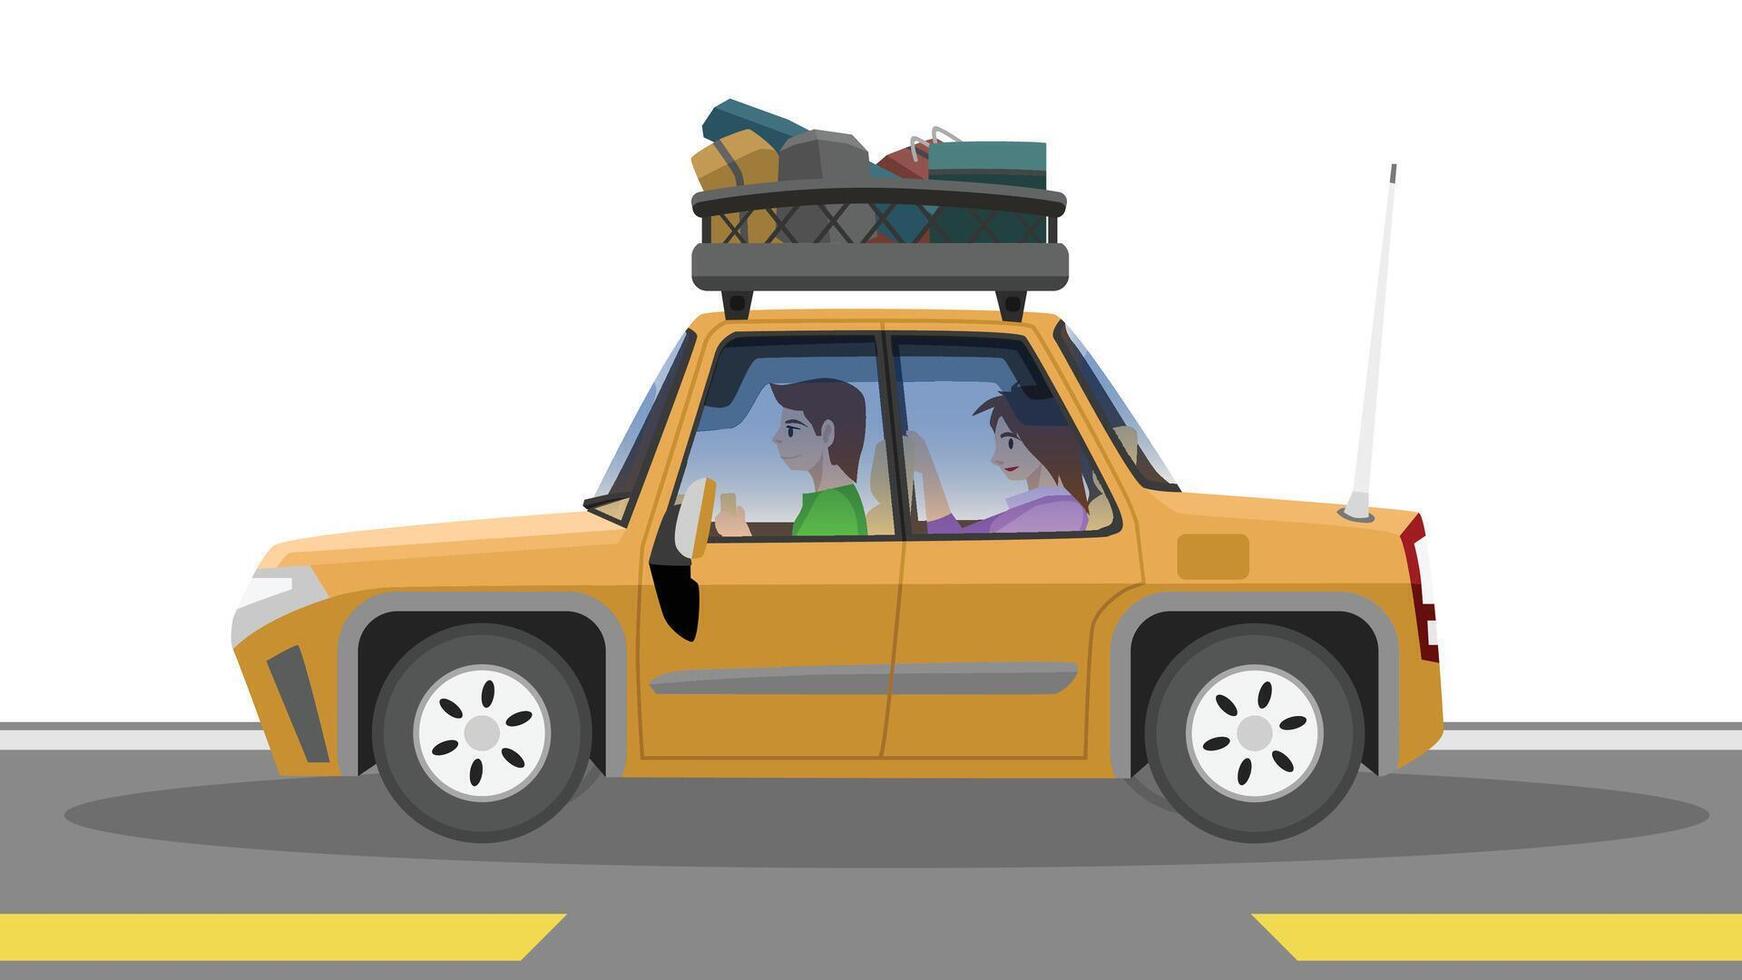 objeto vector o ilustración de familia viaje en sedán coche naranja color. conducción en hombre con hembra pasajero sentar en el atrás. carros tener bastidores a llevar equipaje y otro cosas para largo distancias